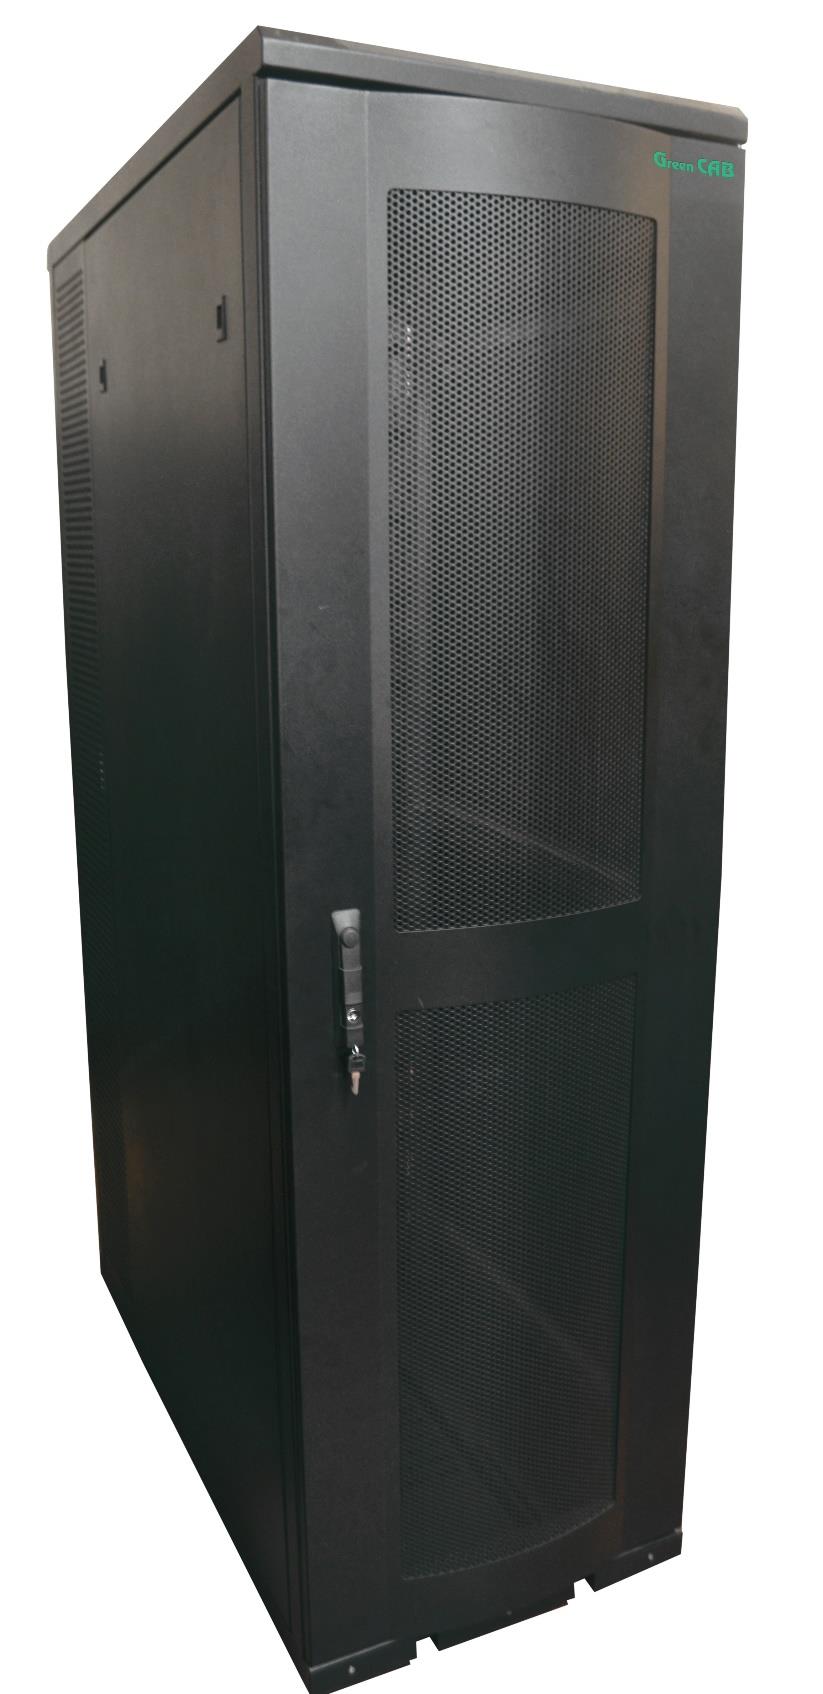 SVR Serisi SVR modeli 1250kg yük kapasitesine sahip olup Data Center larda güvenle kullanabileceğiniz bir modeldir.